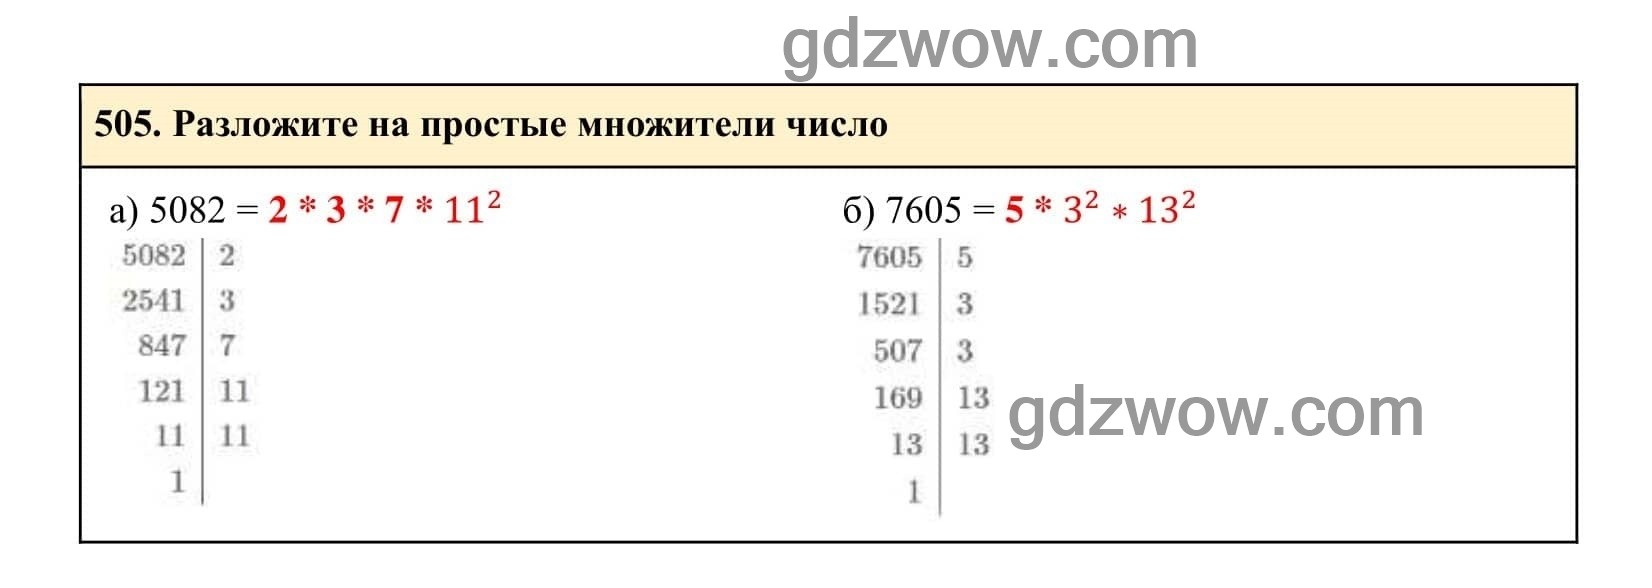 Упражнение 505 - ГДЗ по Алгебре 7 класс Учебник Макарычев (решебник) - GDZwow